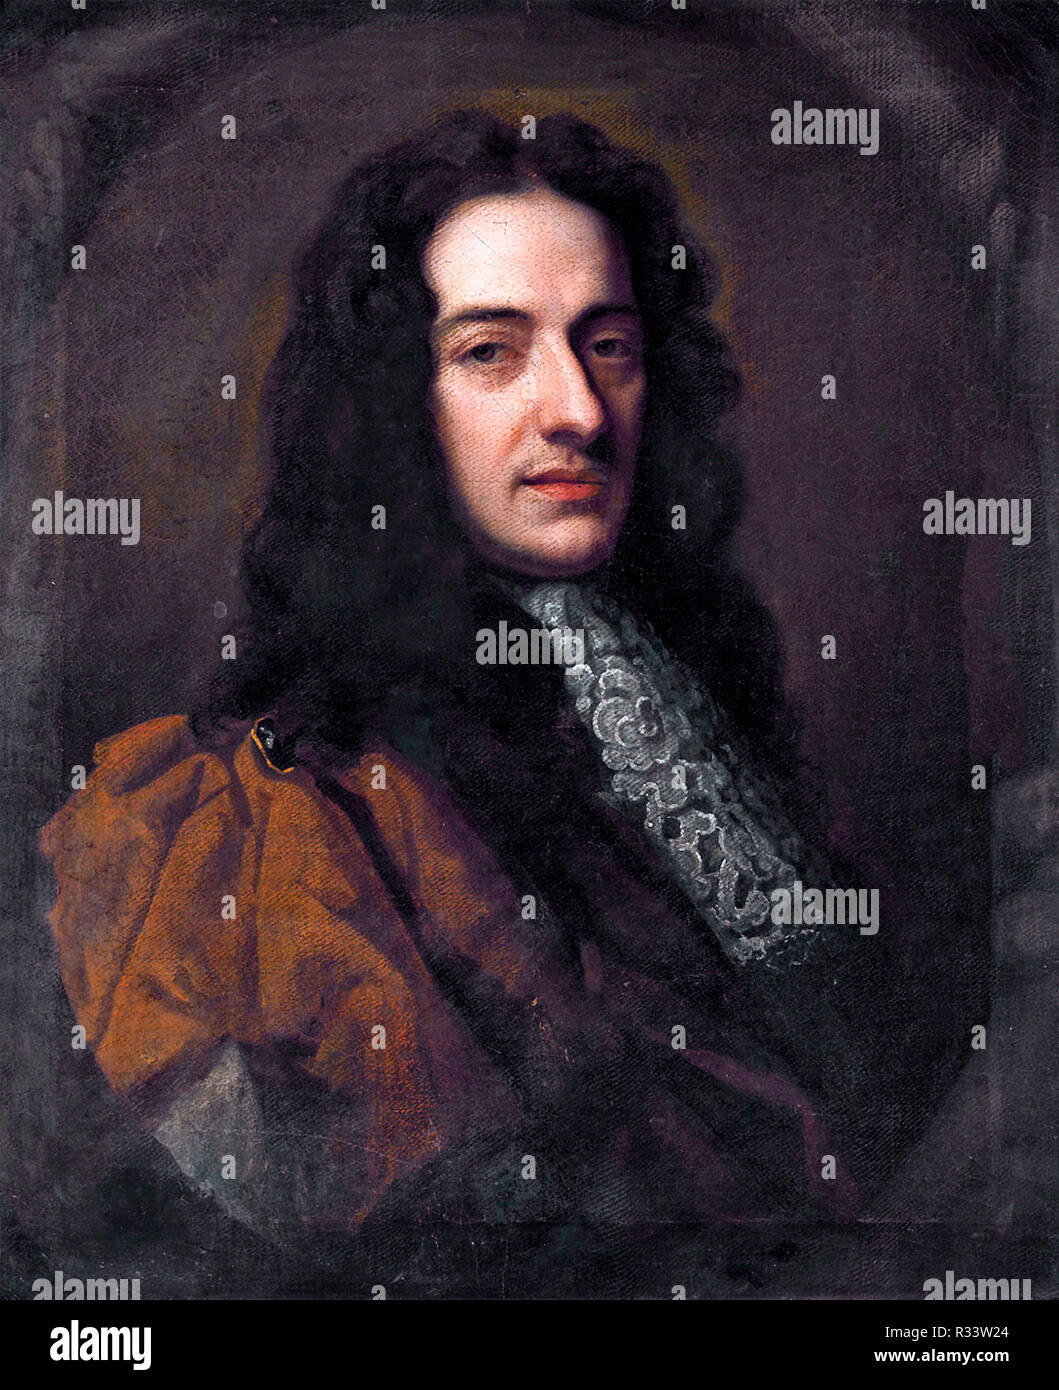 Nicola Matteis, fue el primer notable violinista barroco italiano en Londres Foto de stock